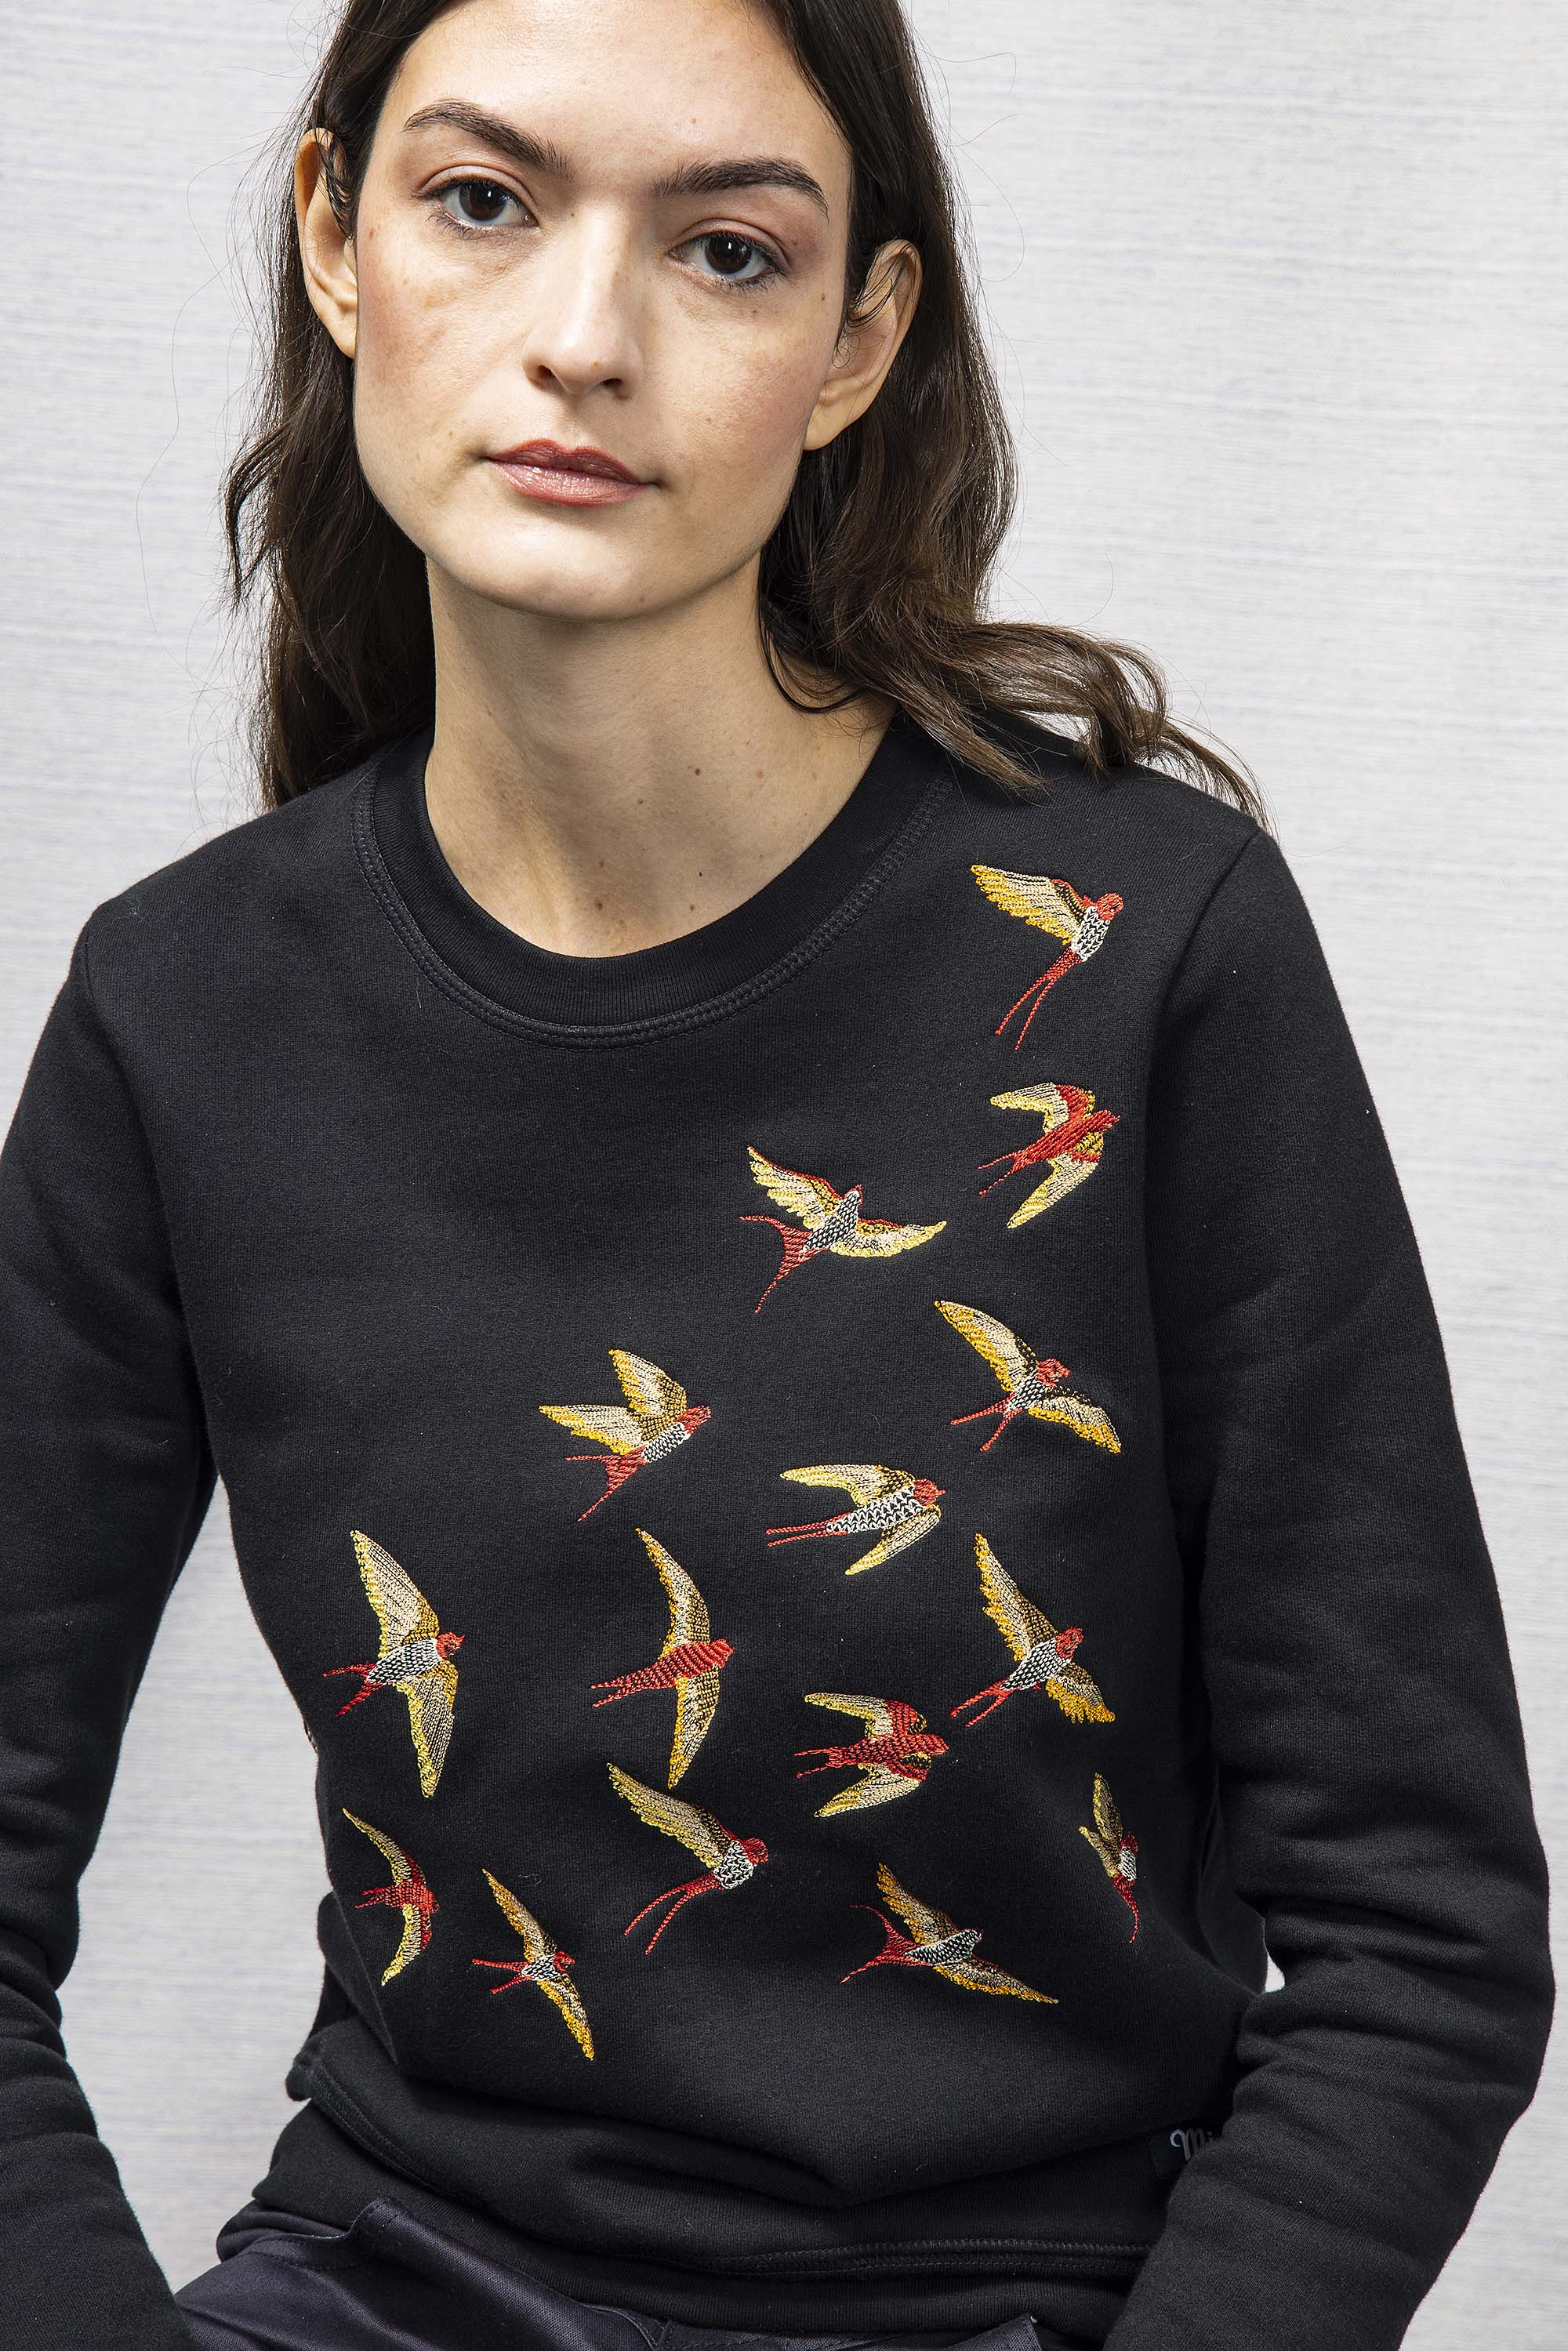 Sweatshirt Macarron Aves Noir sweatshirt femme, pièce basique et vêtement cocooning du quotidien